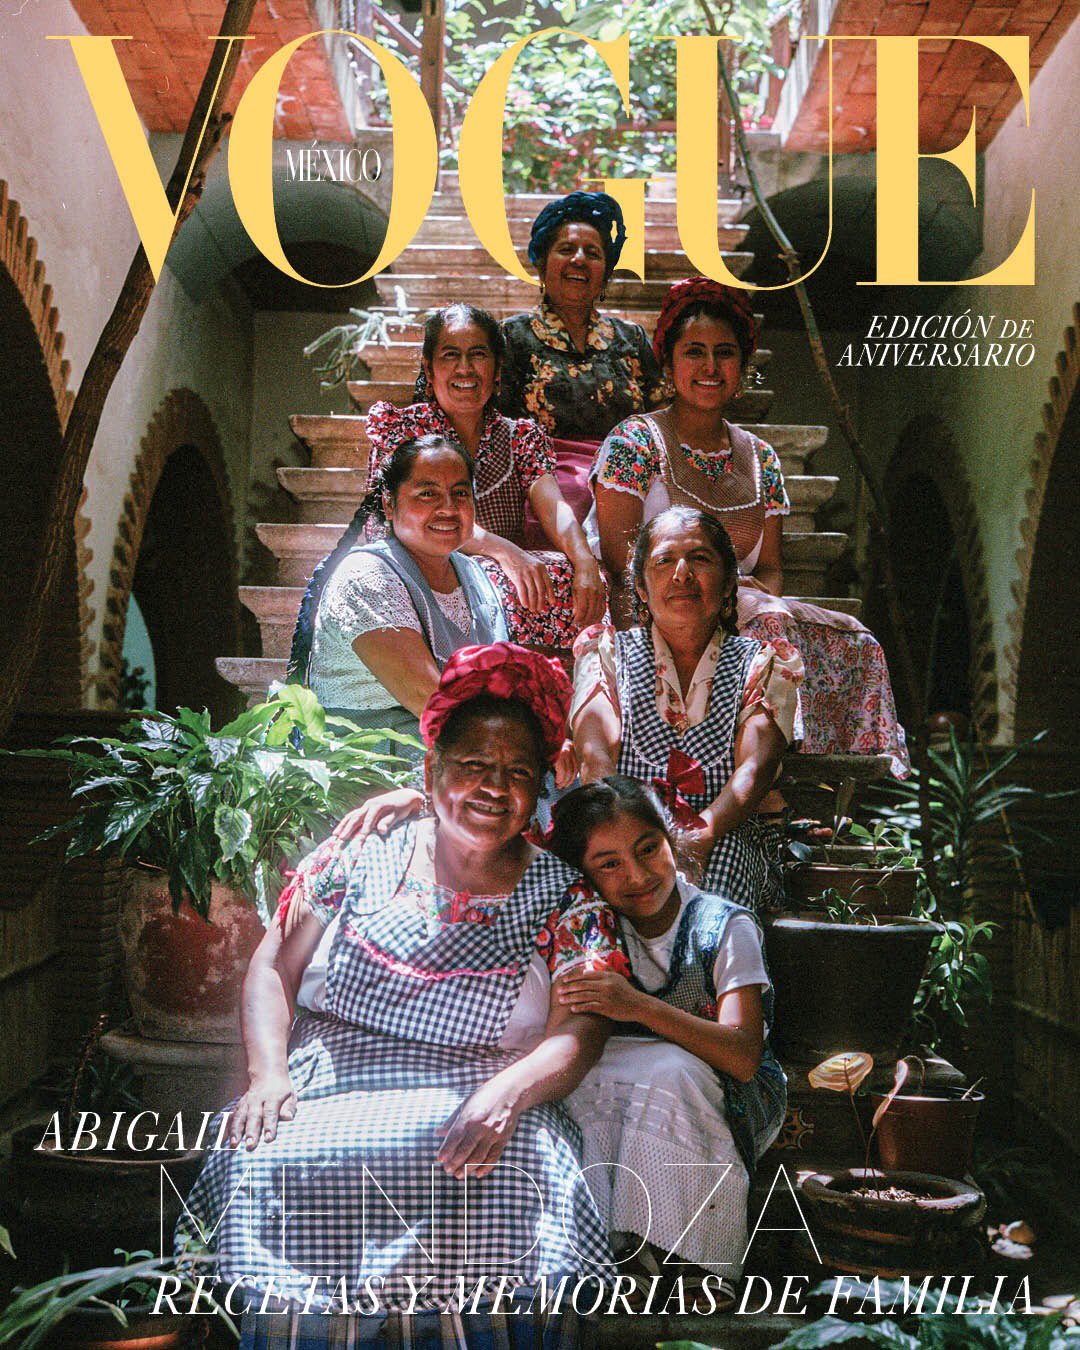 Estamos de fiesta: Abigail Mendoza en portada por el 20 aniversario de la Revista Vogue México.